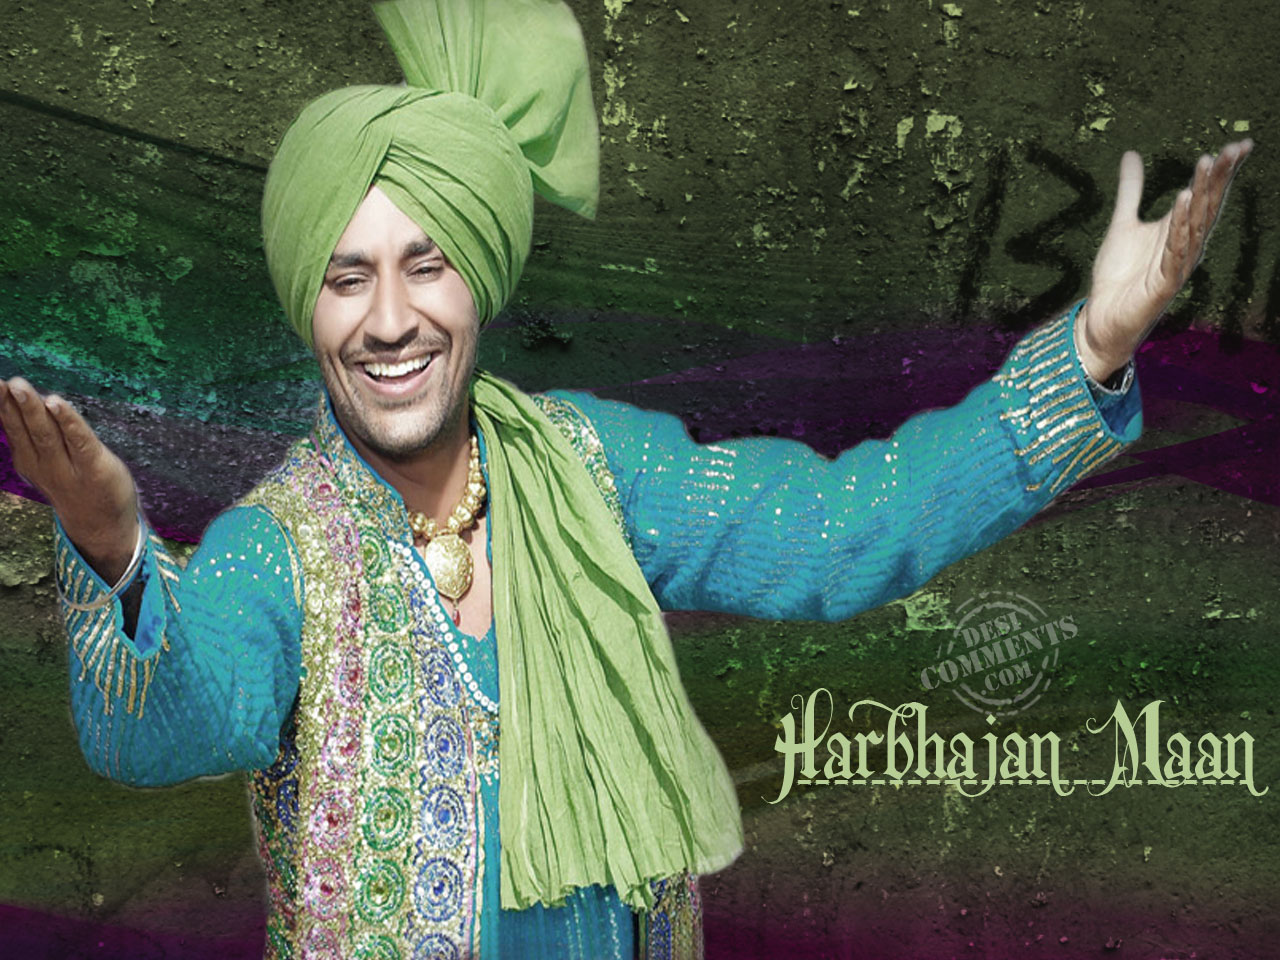 Punjabi Singer Harbhajan Maan